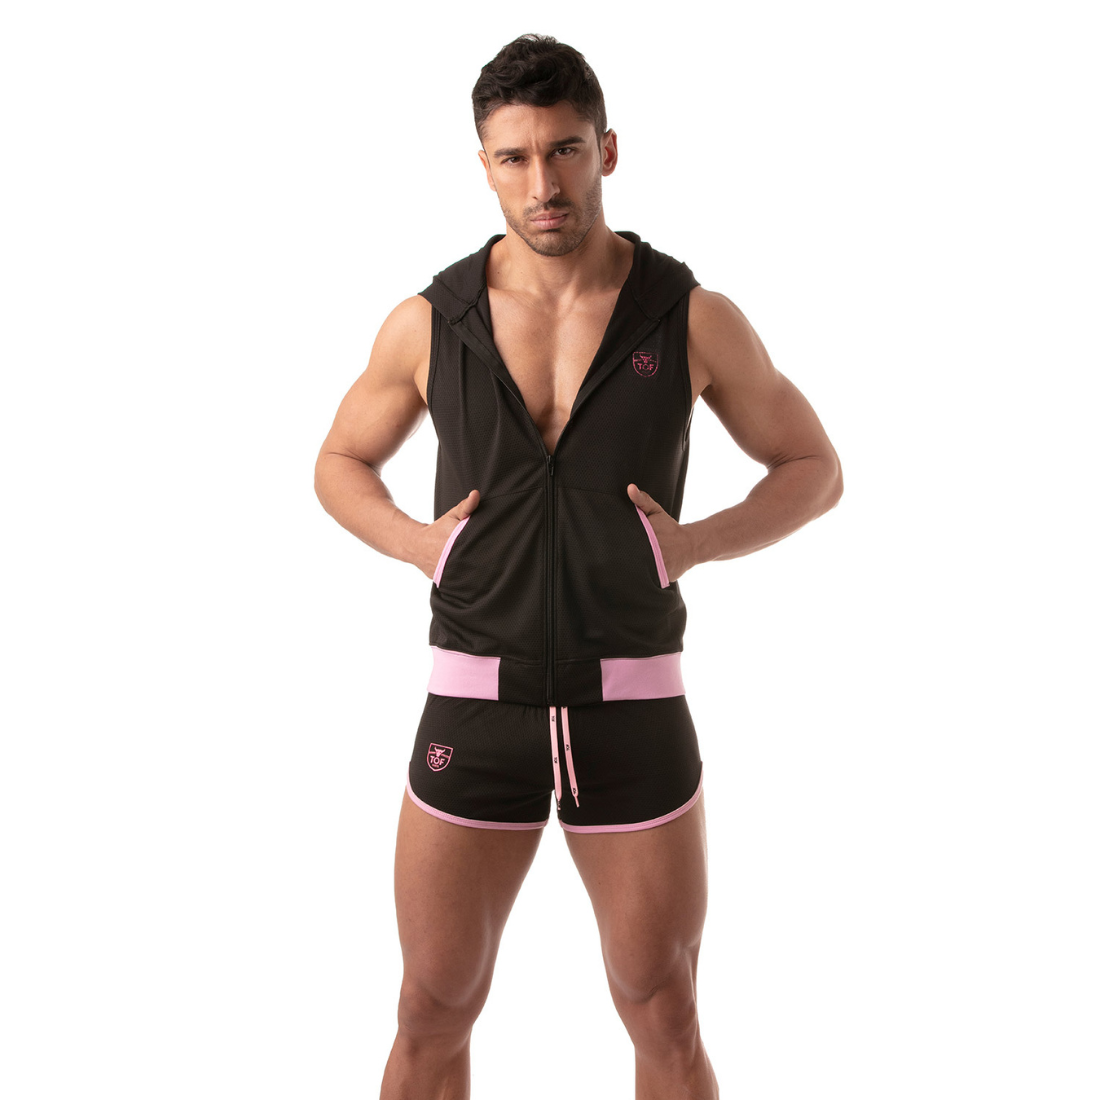 Zwarte hoodie zonder mouwen met roze accenten, ontworpen door het Franse modehuis Tof Paris. Perfect voor gay mannen en te koop bij Flavourez.